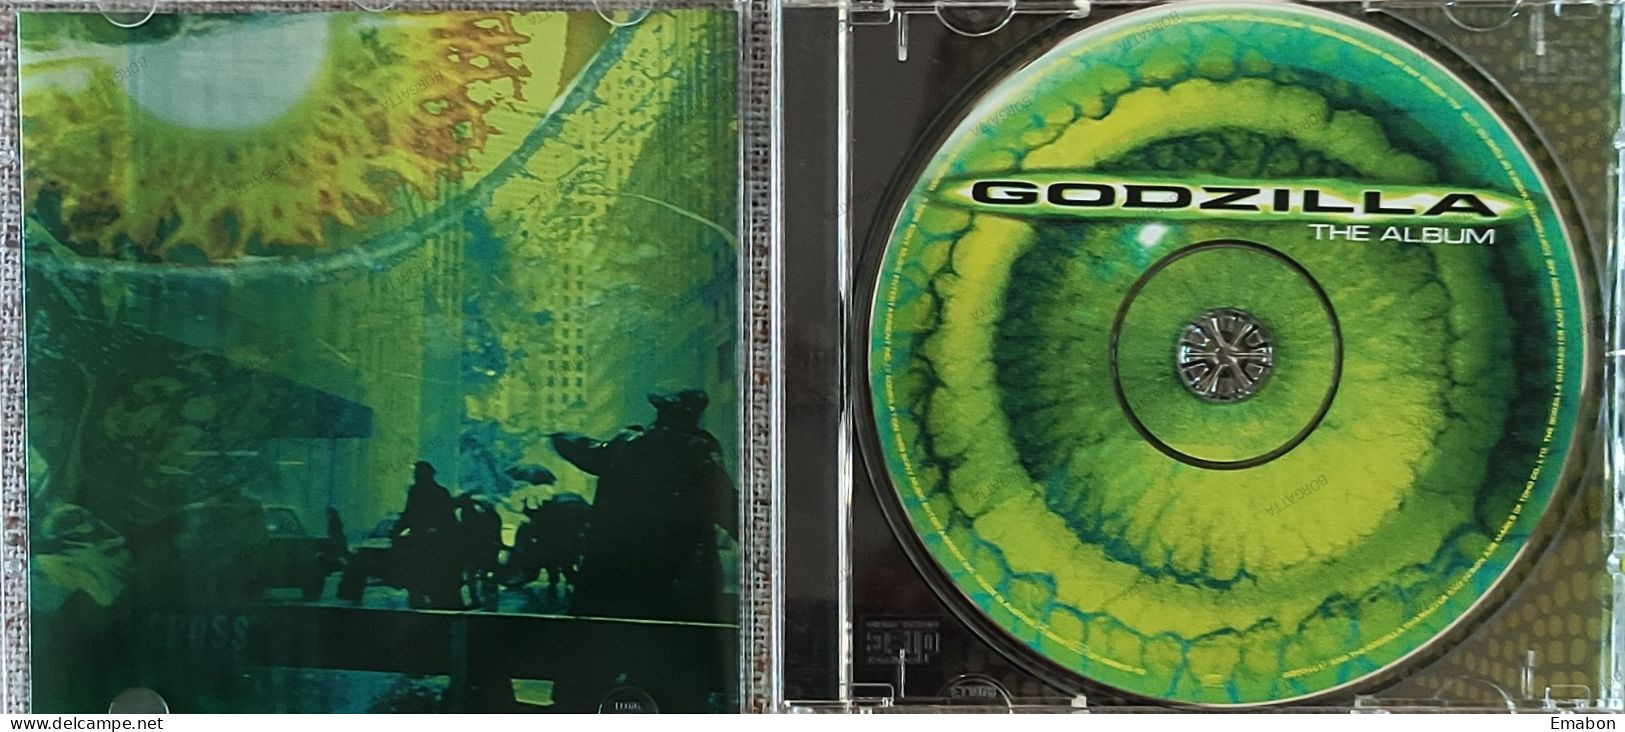 BORGATTA - FILM MUSIC  - Cd   THE ALBUM GODZILLA - EPIC/SONY 1998- USATO In Buono Stato - Musique De Films